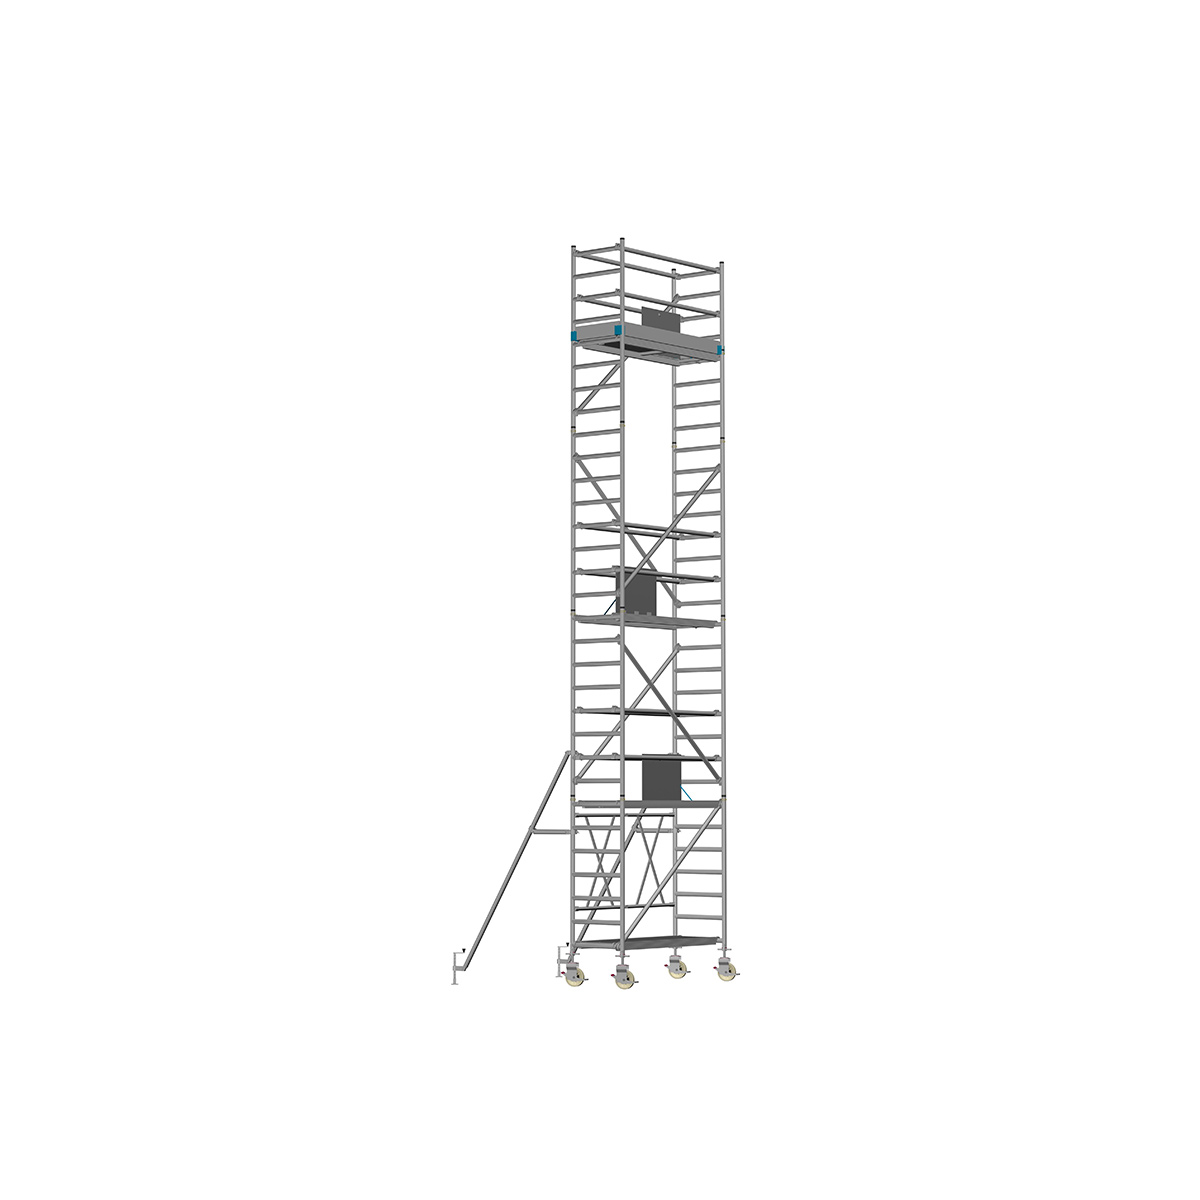 Chiemsee 2 SPEZIAL - Länge: 2,54 m - Breite: 0,74 m, Standhöhe 7,00 m